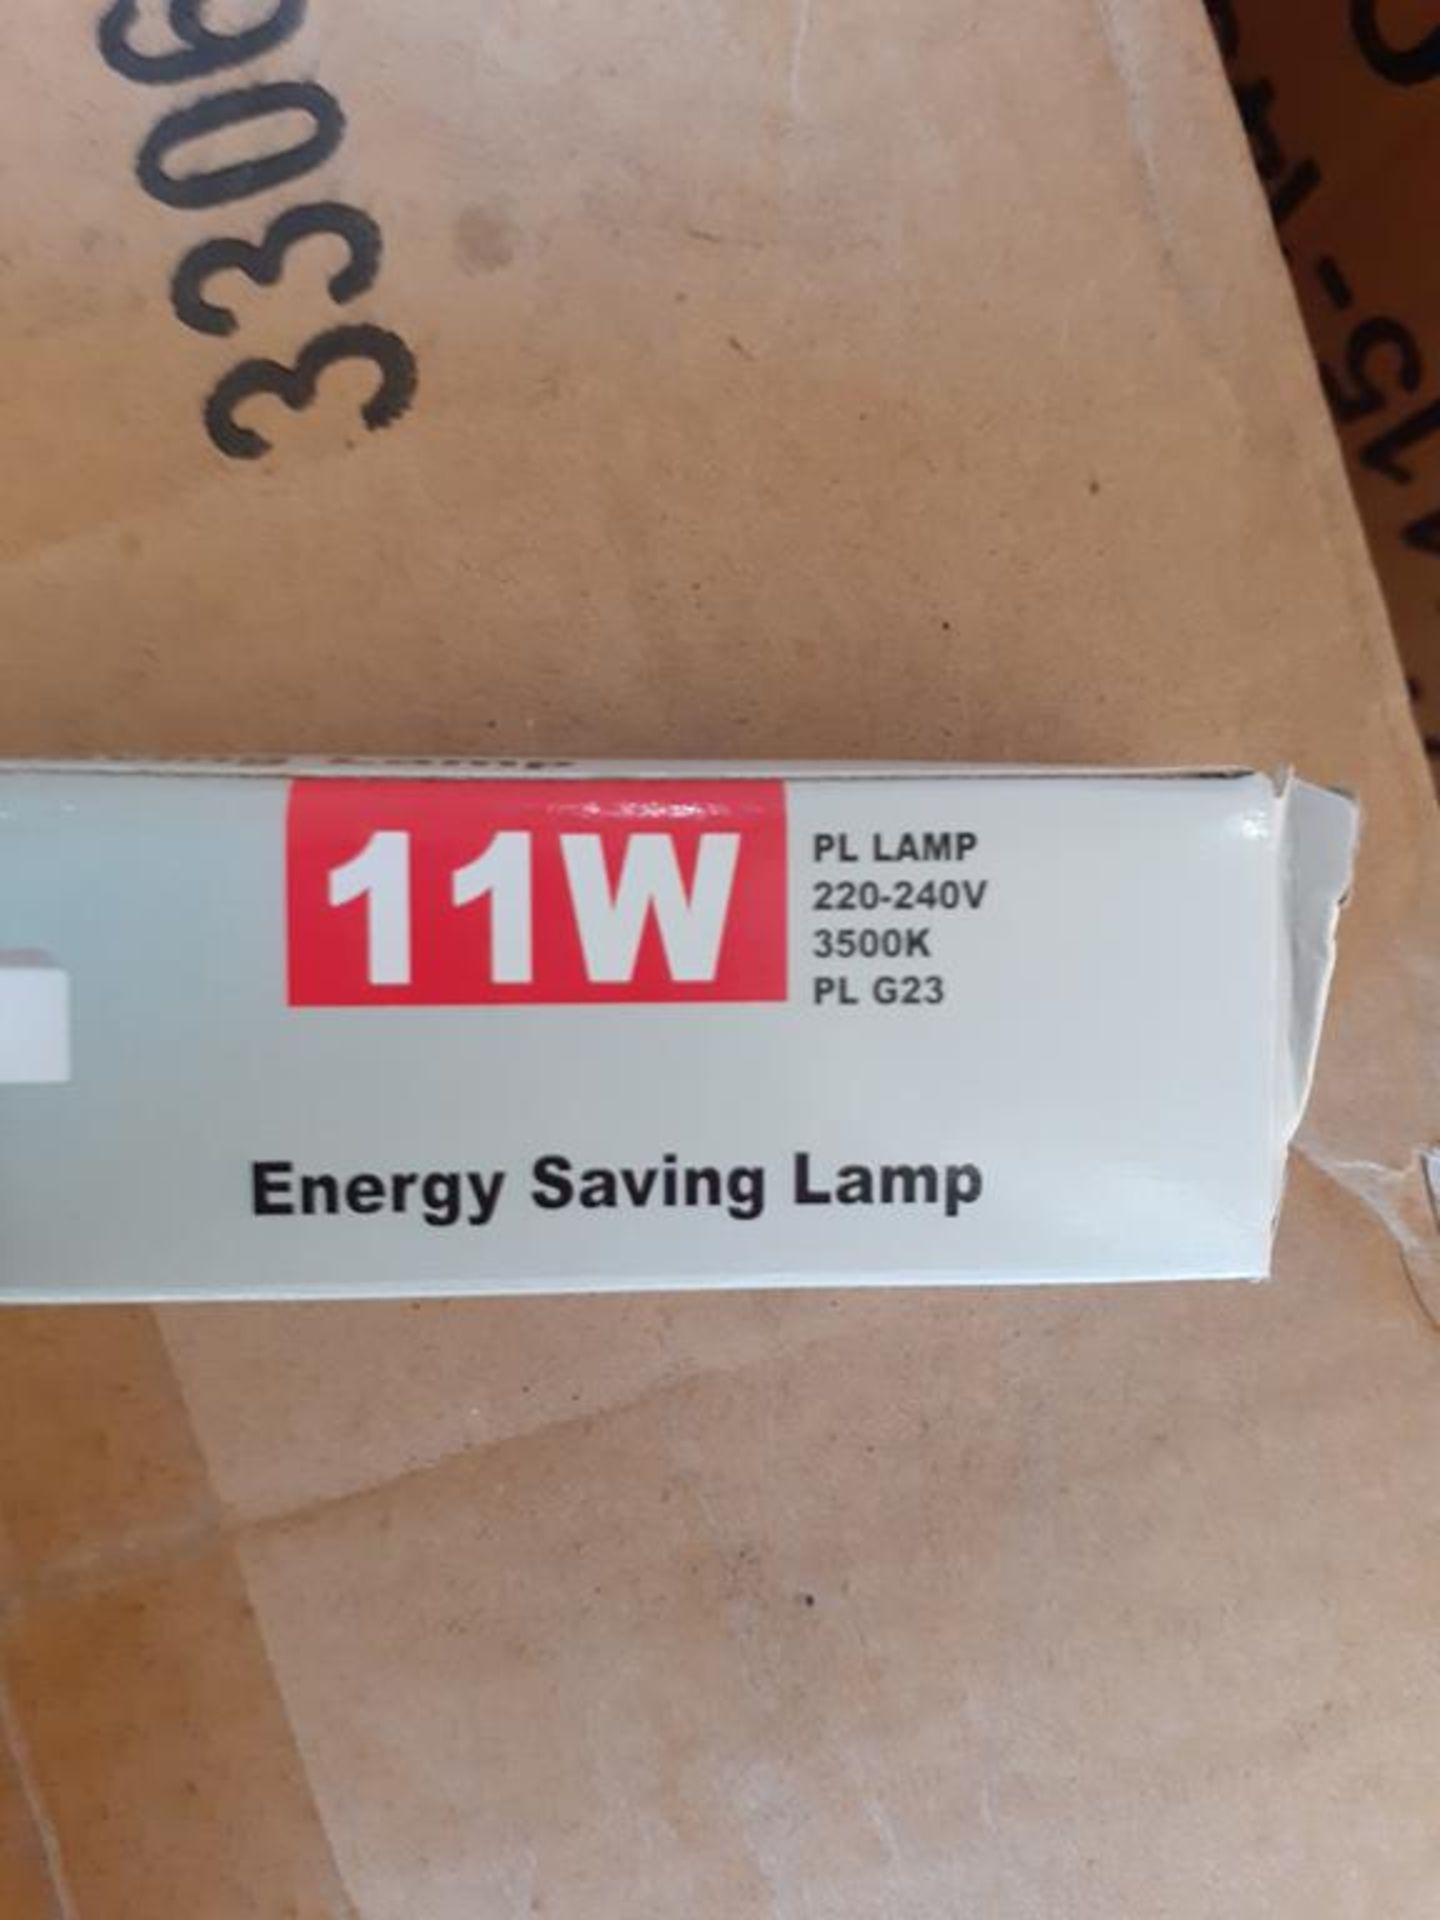 3x boxes of Lumineux PL 11W G23 3500K 220-240V Energy Saving Light Bulbs (200pcs per box) - Image 2 of 4